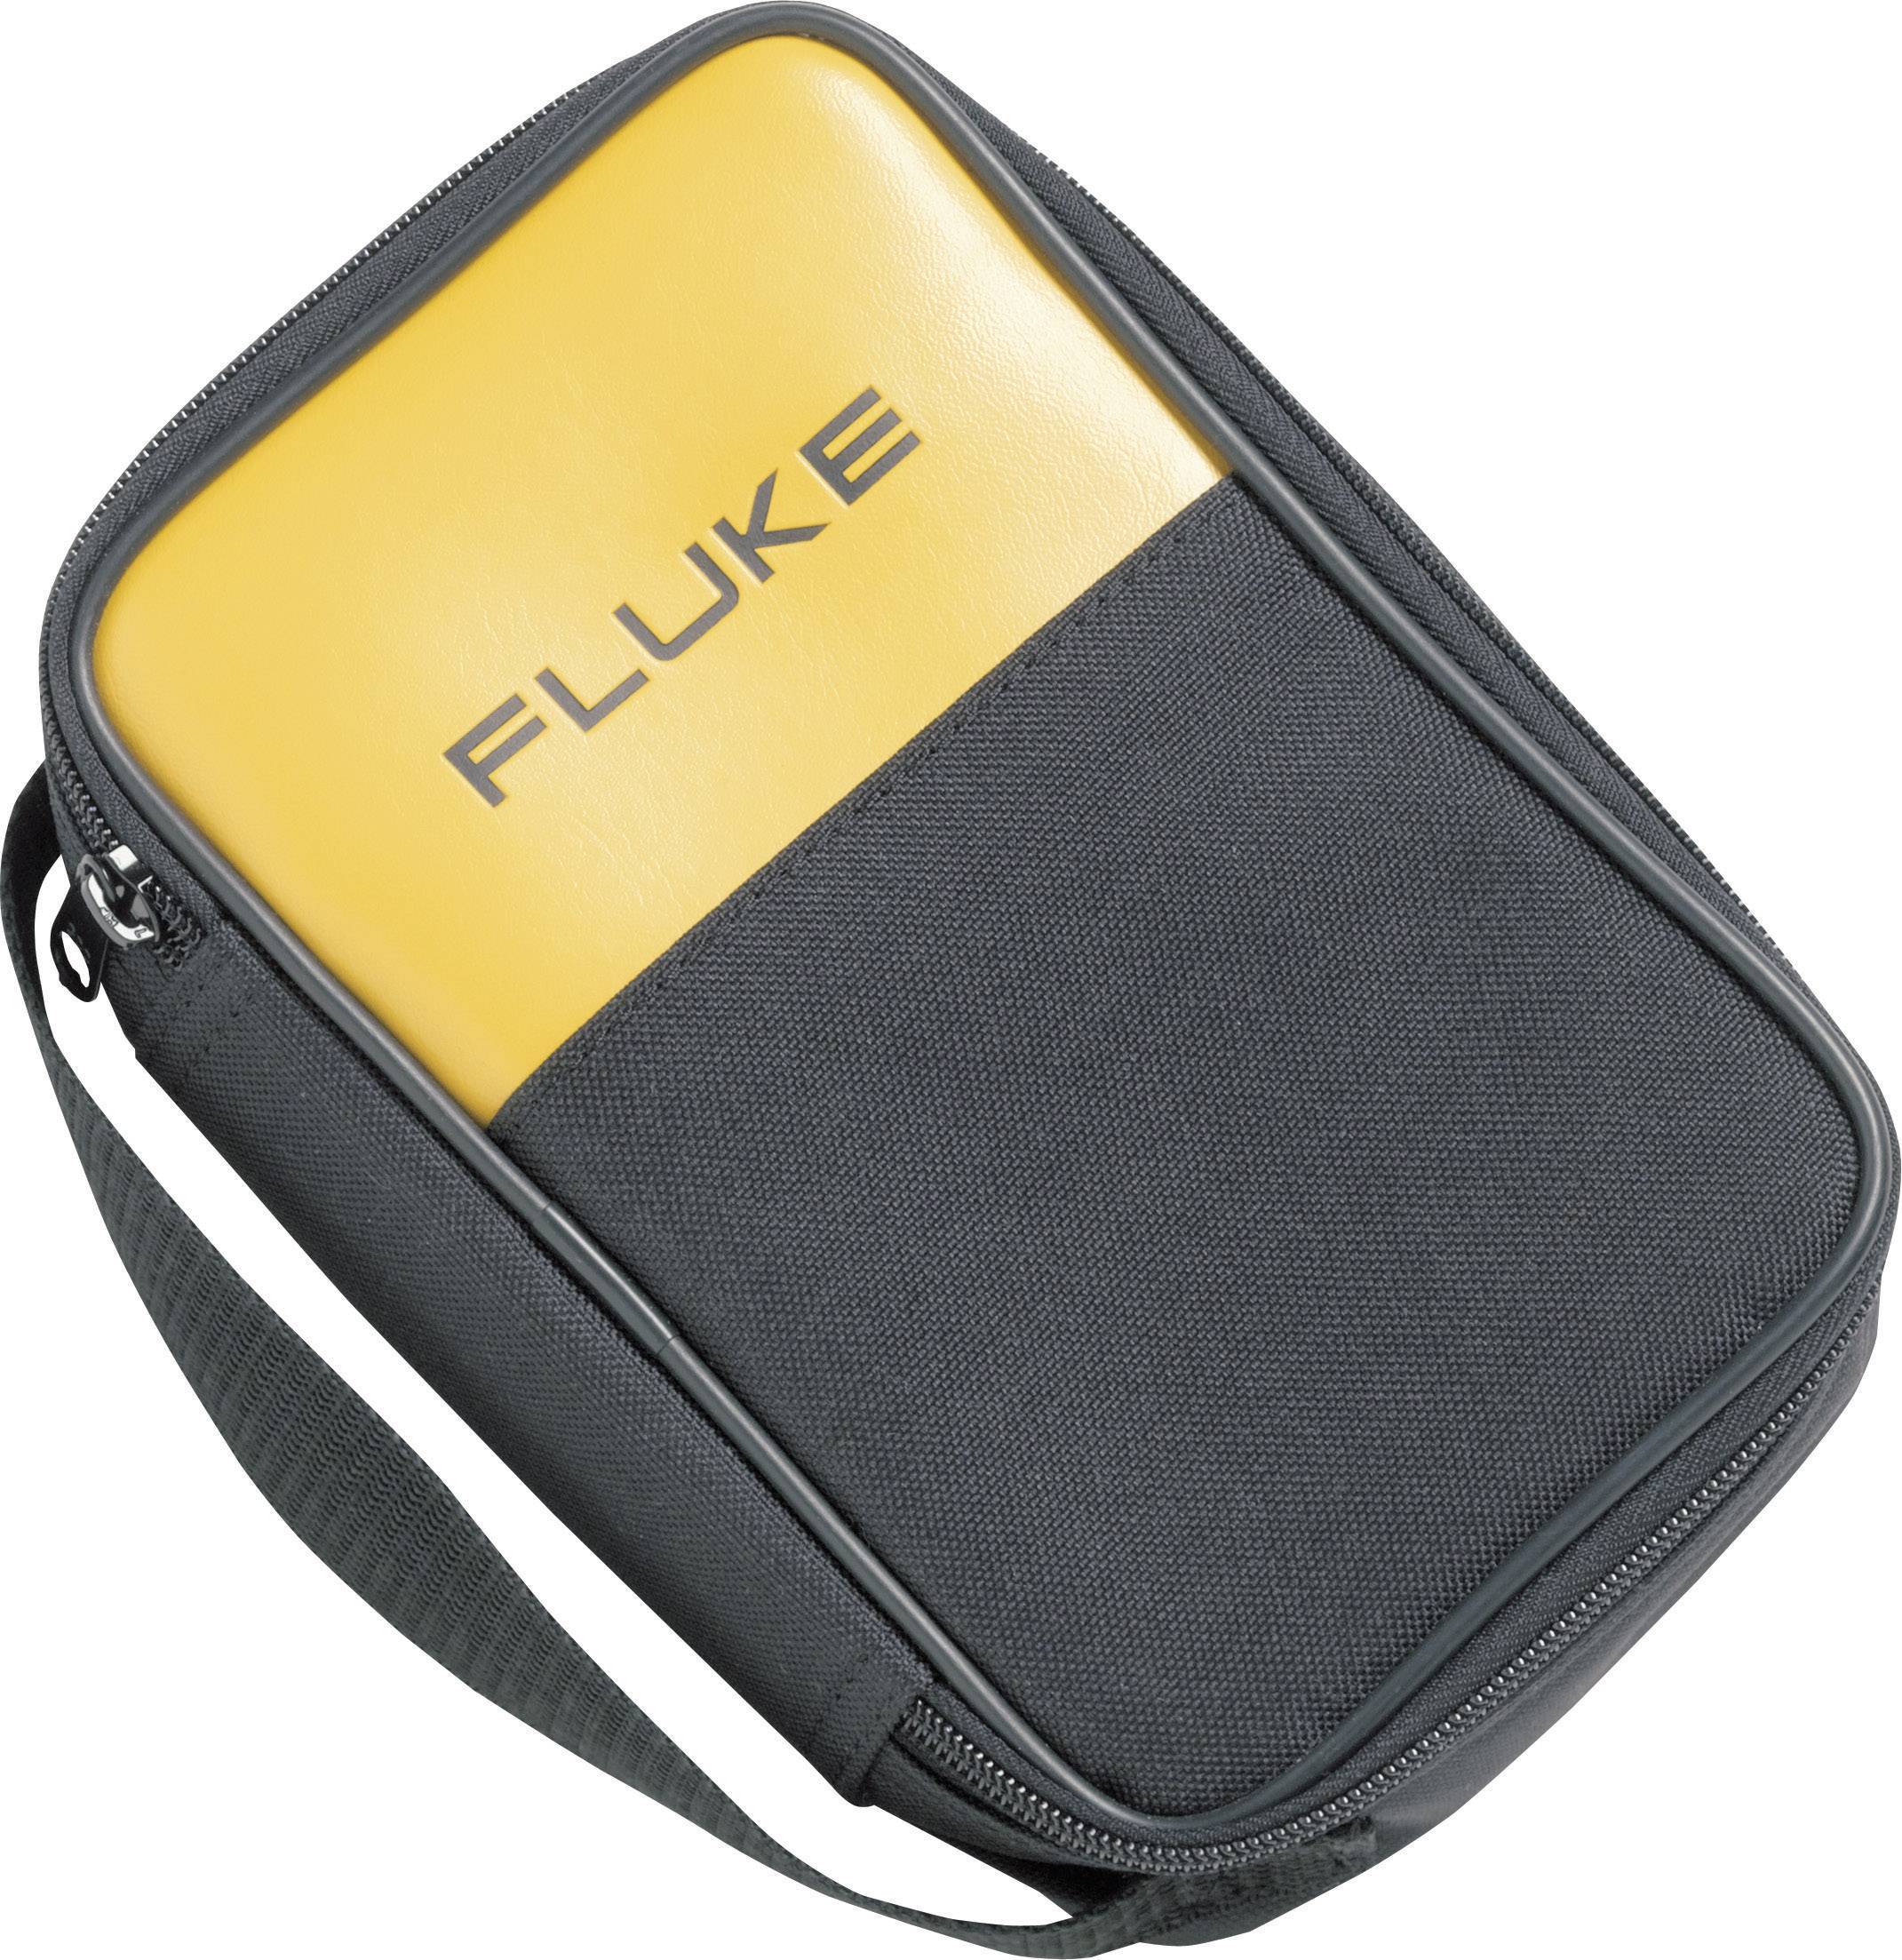 FLUKE C35 Messgeräte-Tasche, Etui Passend für (Details) DMM Fluke Serie 11x, 170 und anderen Messg